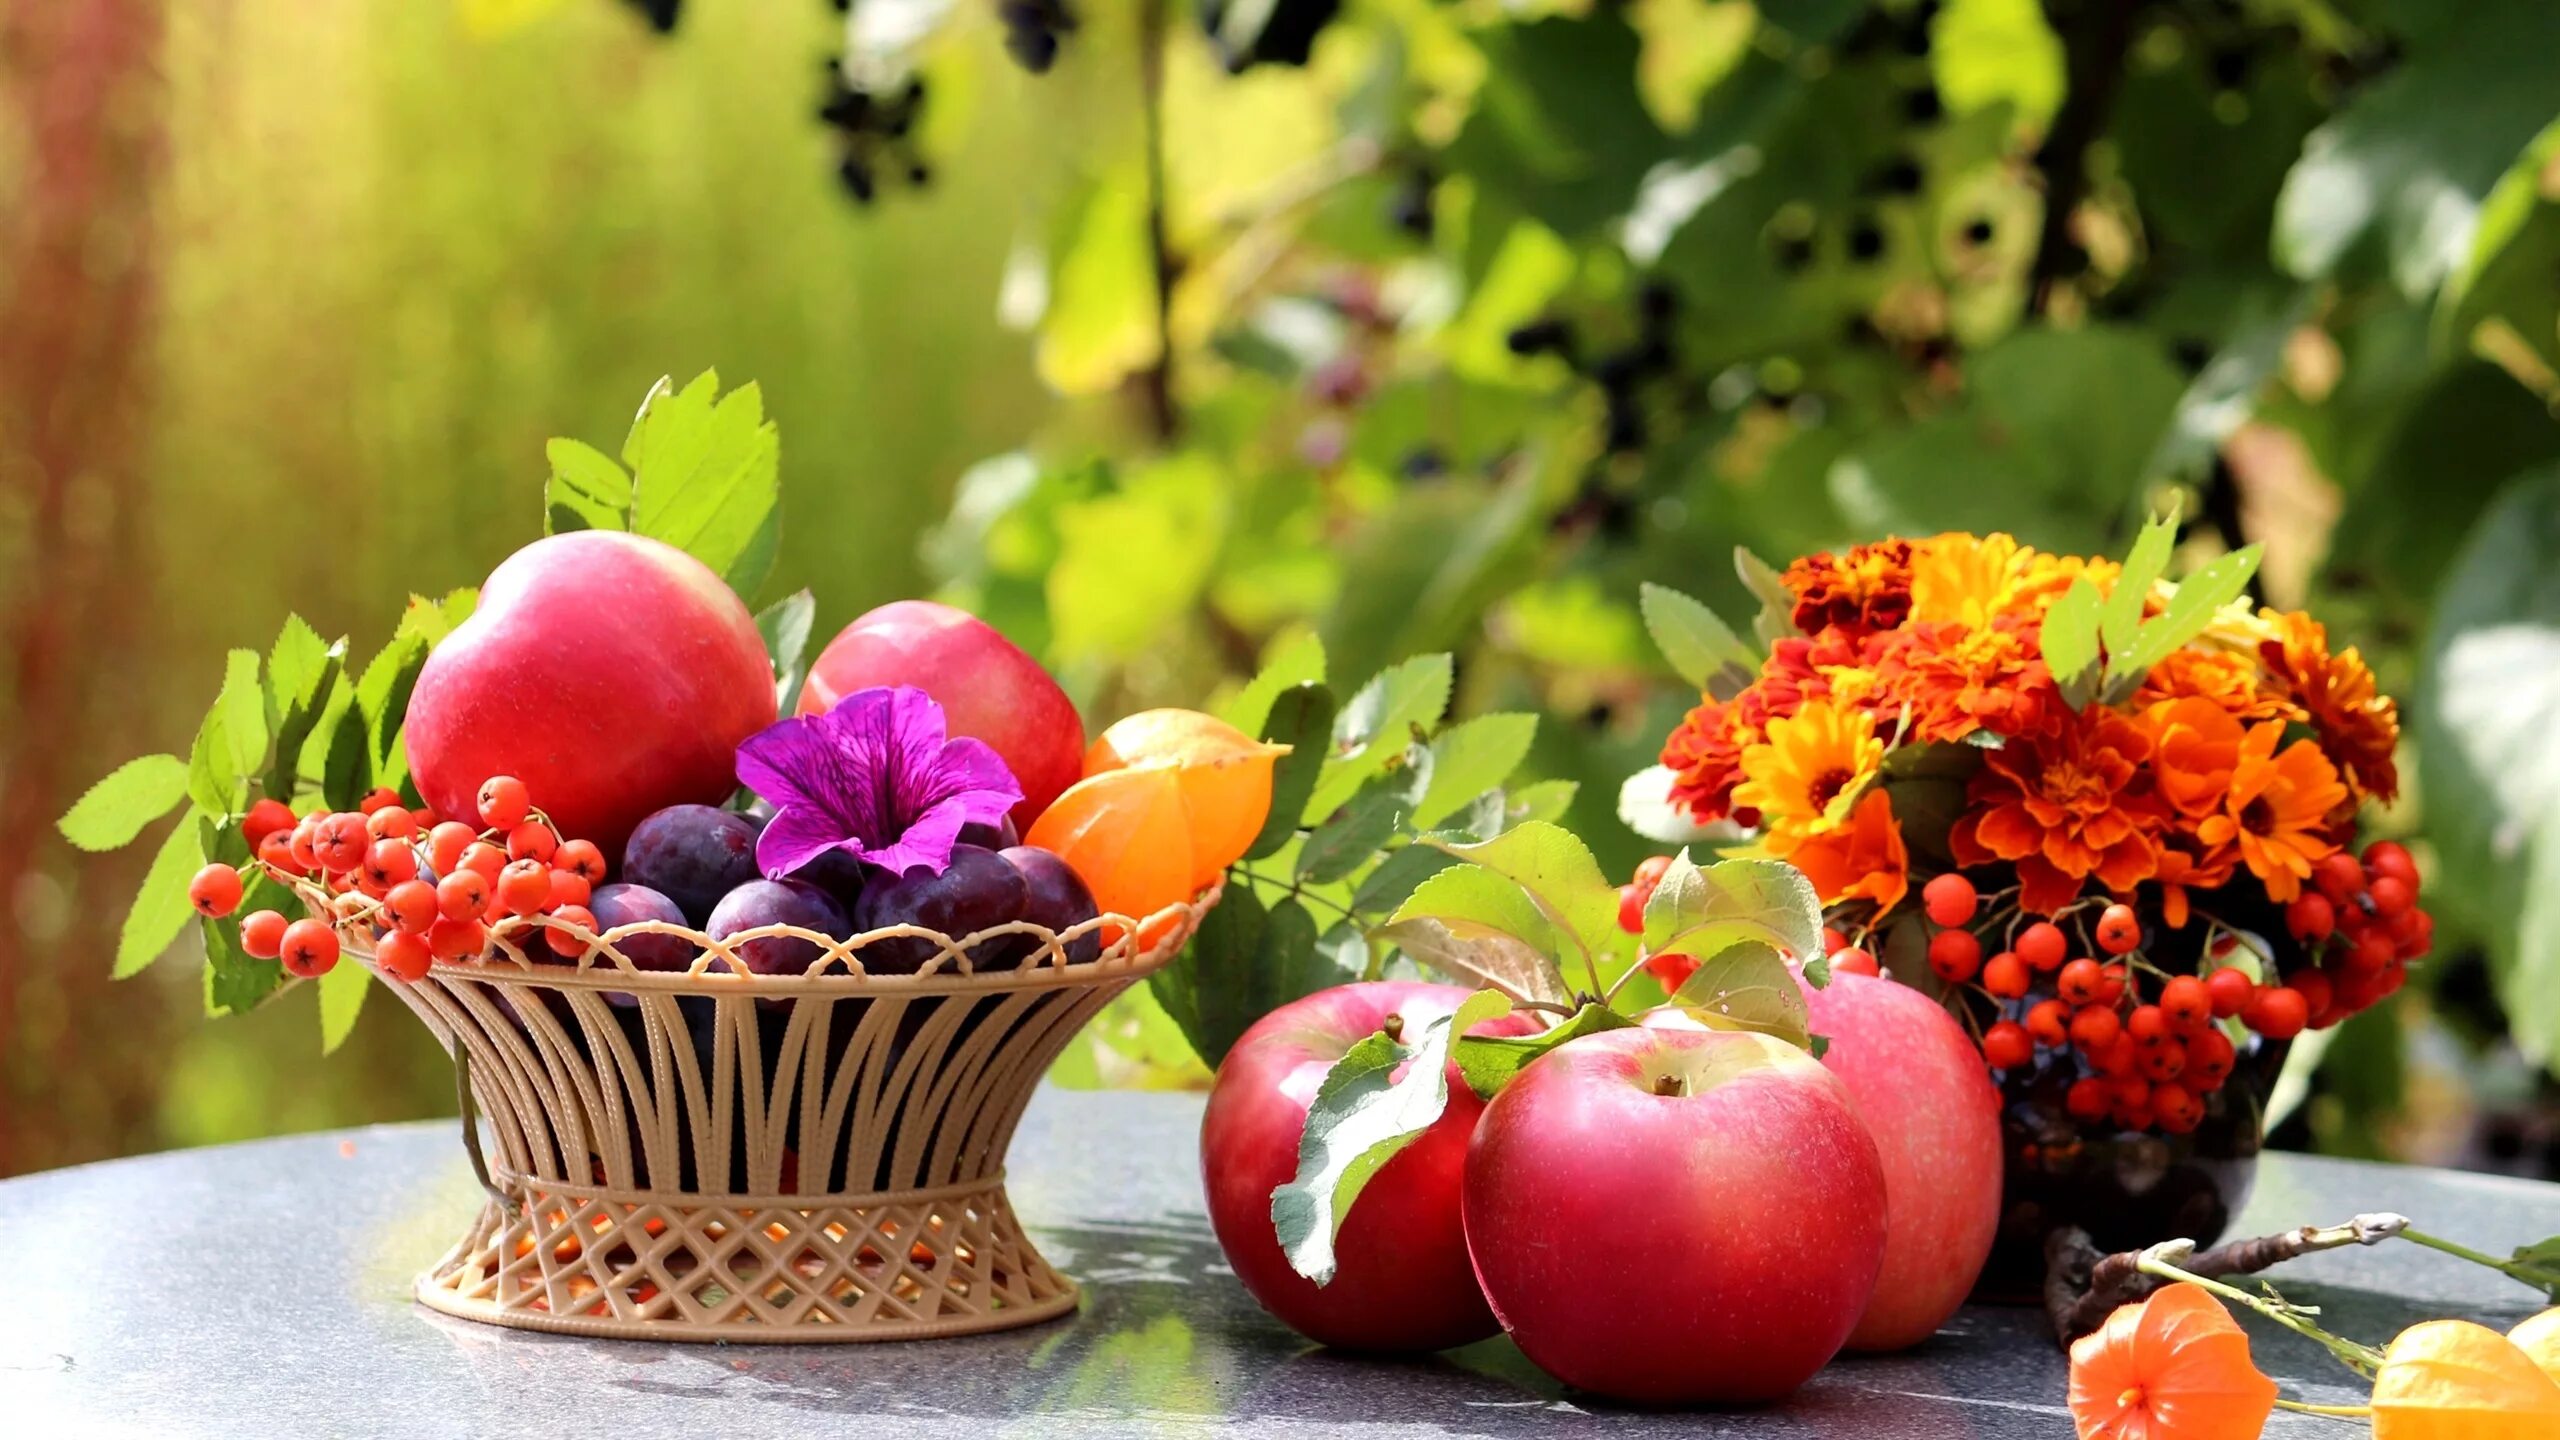 Лето время фруктов. Натюрморт с цветами и фруктами. Осенние цветы в саду. Лето август. Летние фрукты.